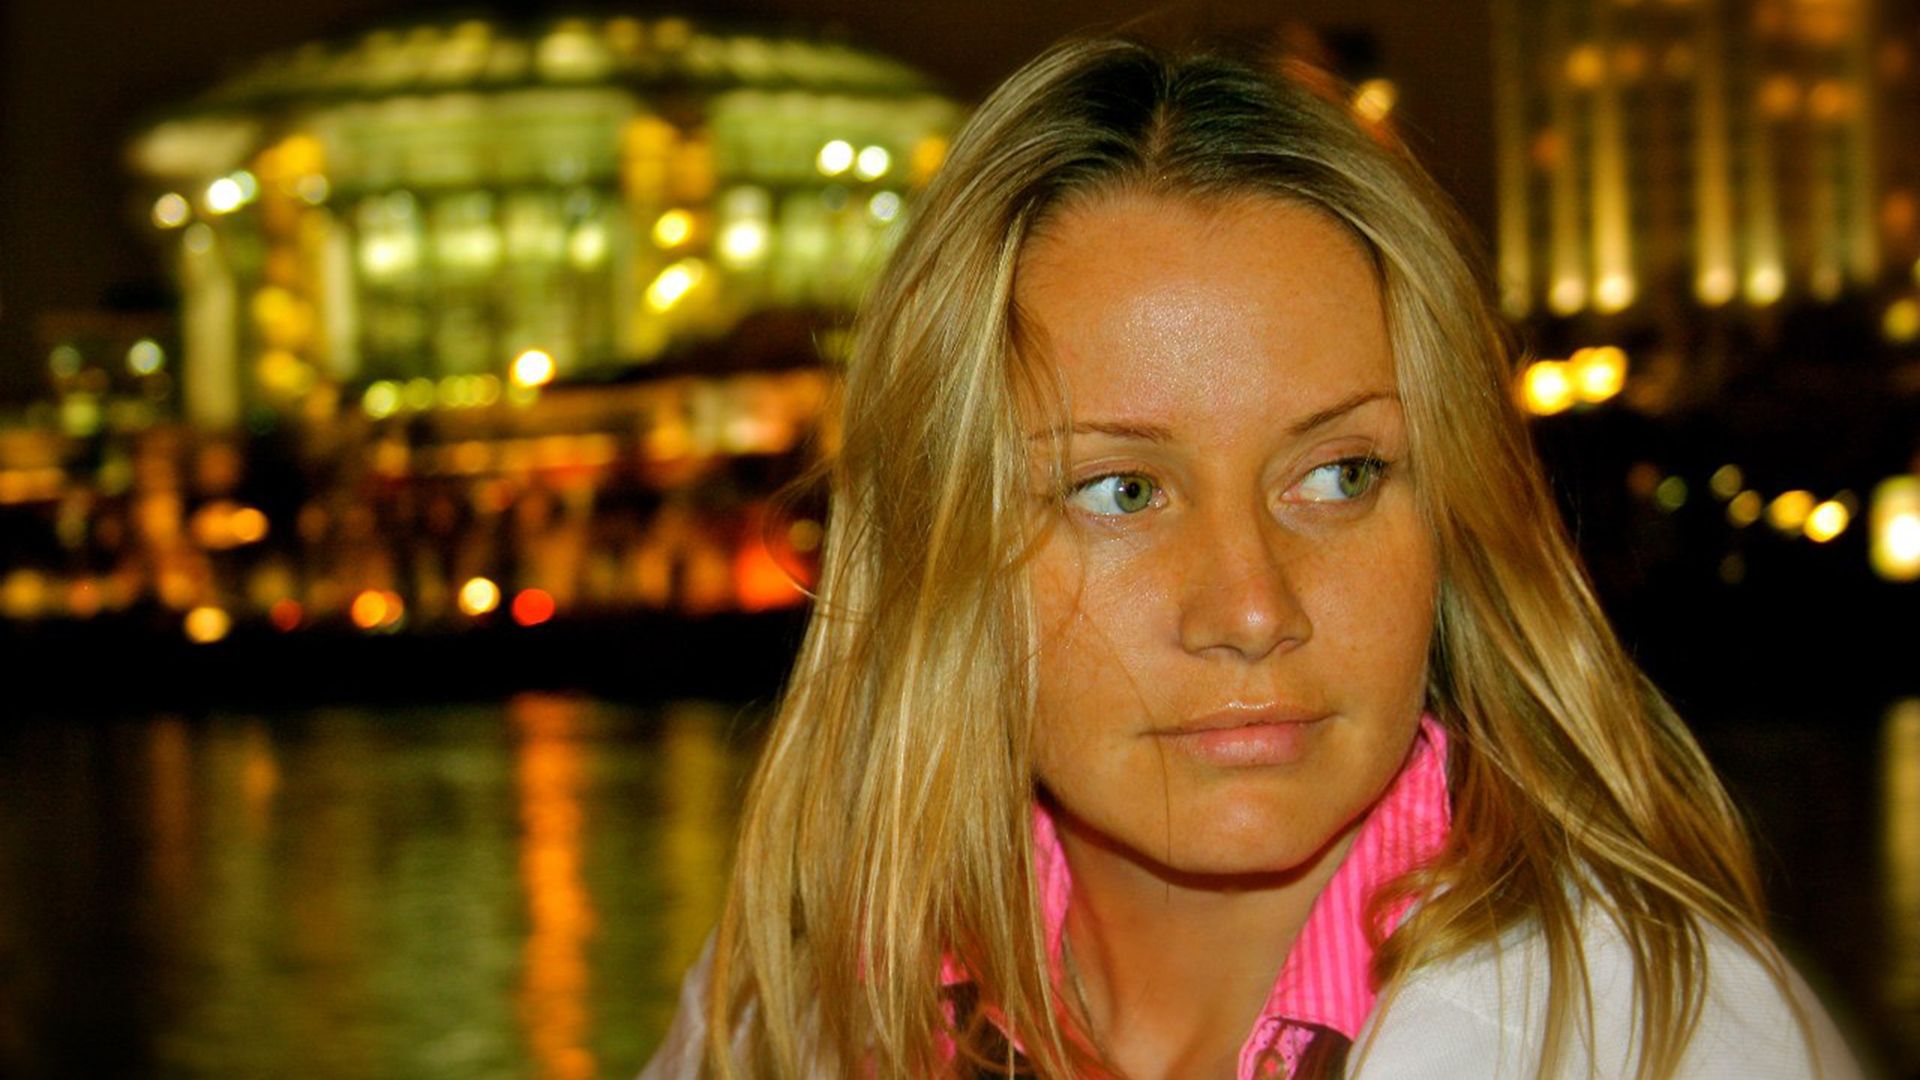 Бывшая девушка Карена Шахназарова: что известно о судьбе актрисы Ольги Сидоровой?